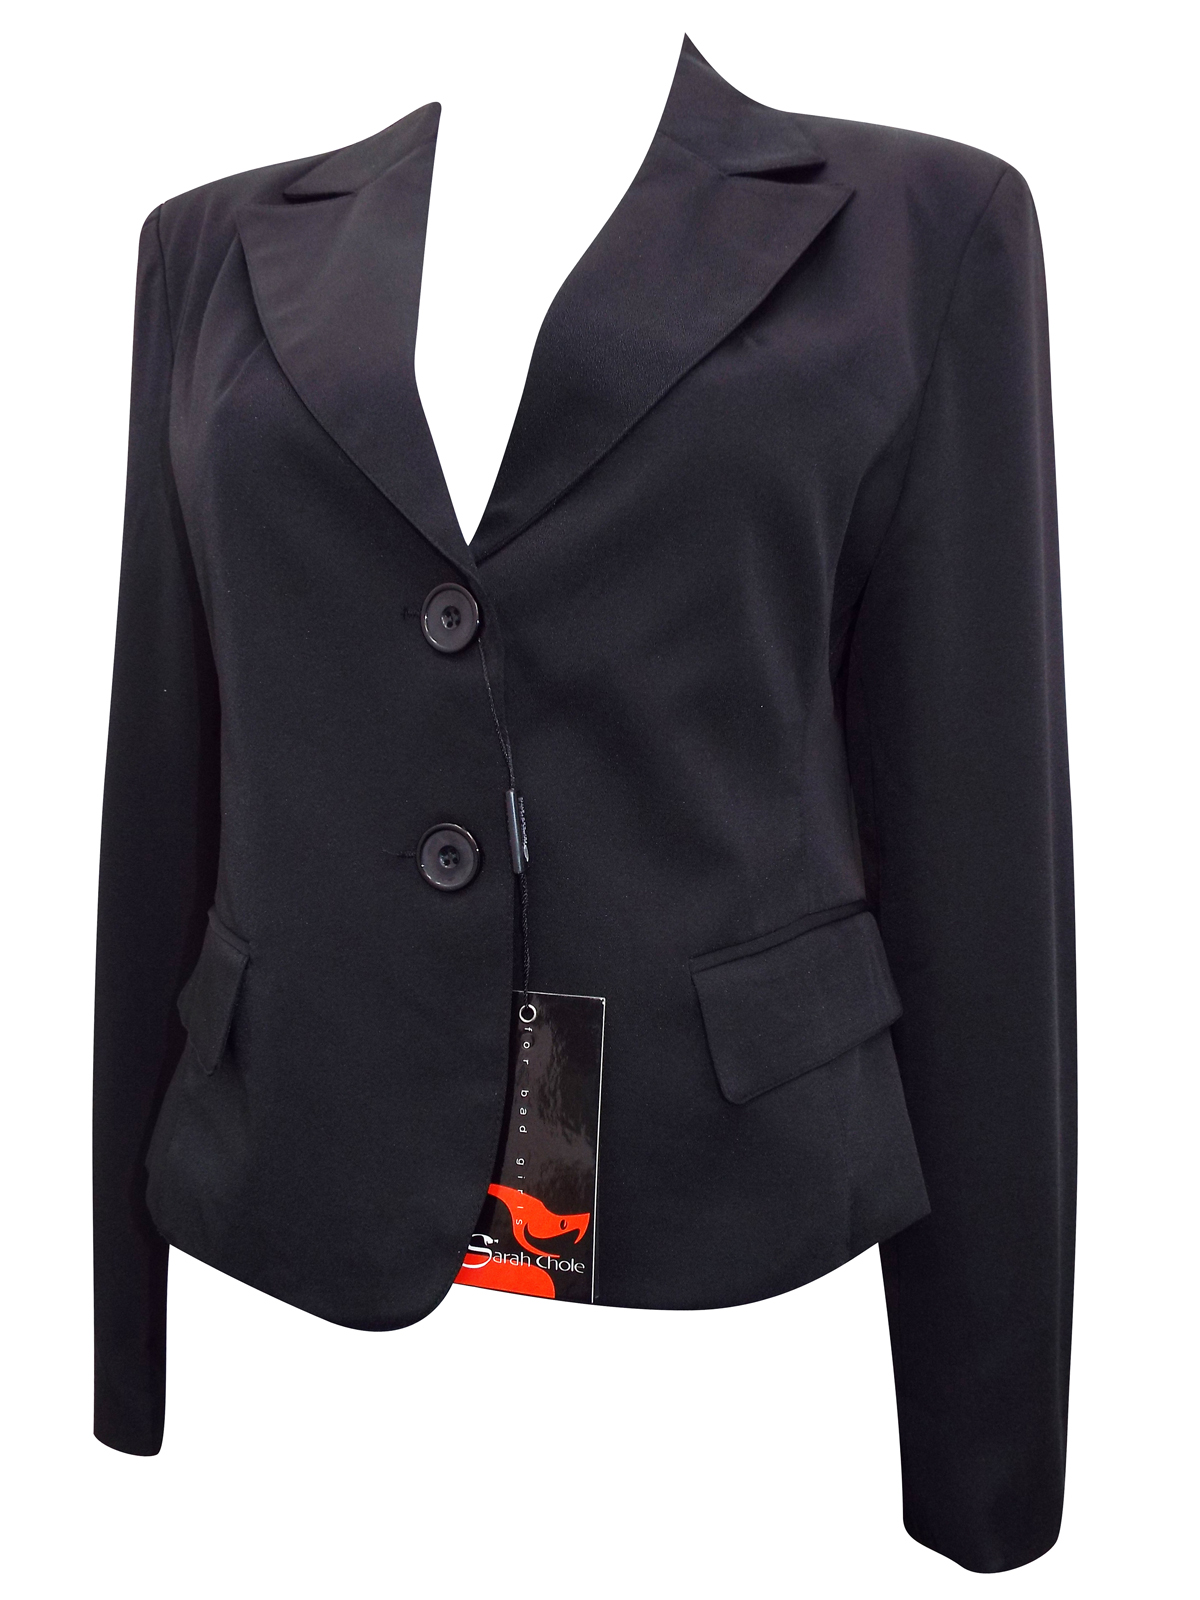 Sarah Chole - - Sarah Chole BLACK Long Sleeve Blazer Jacket - Size 14 (46)